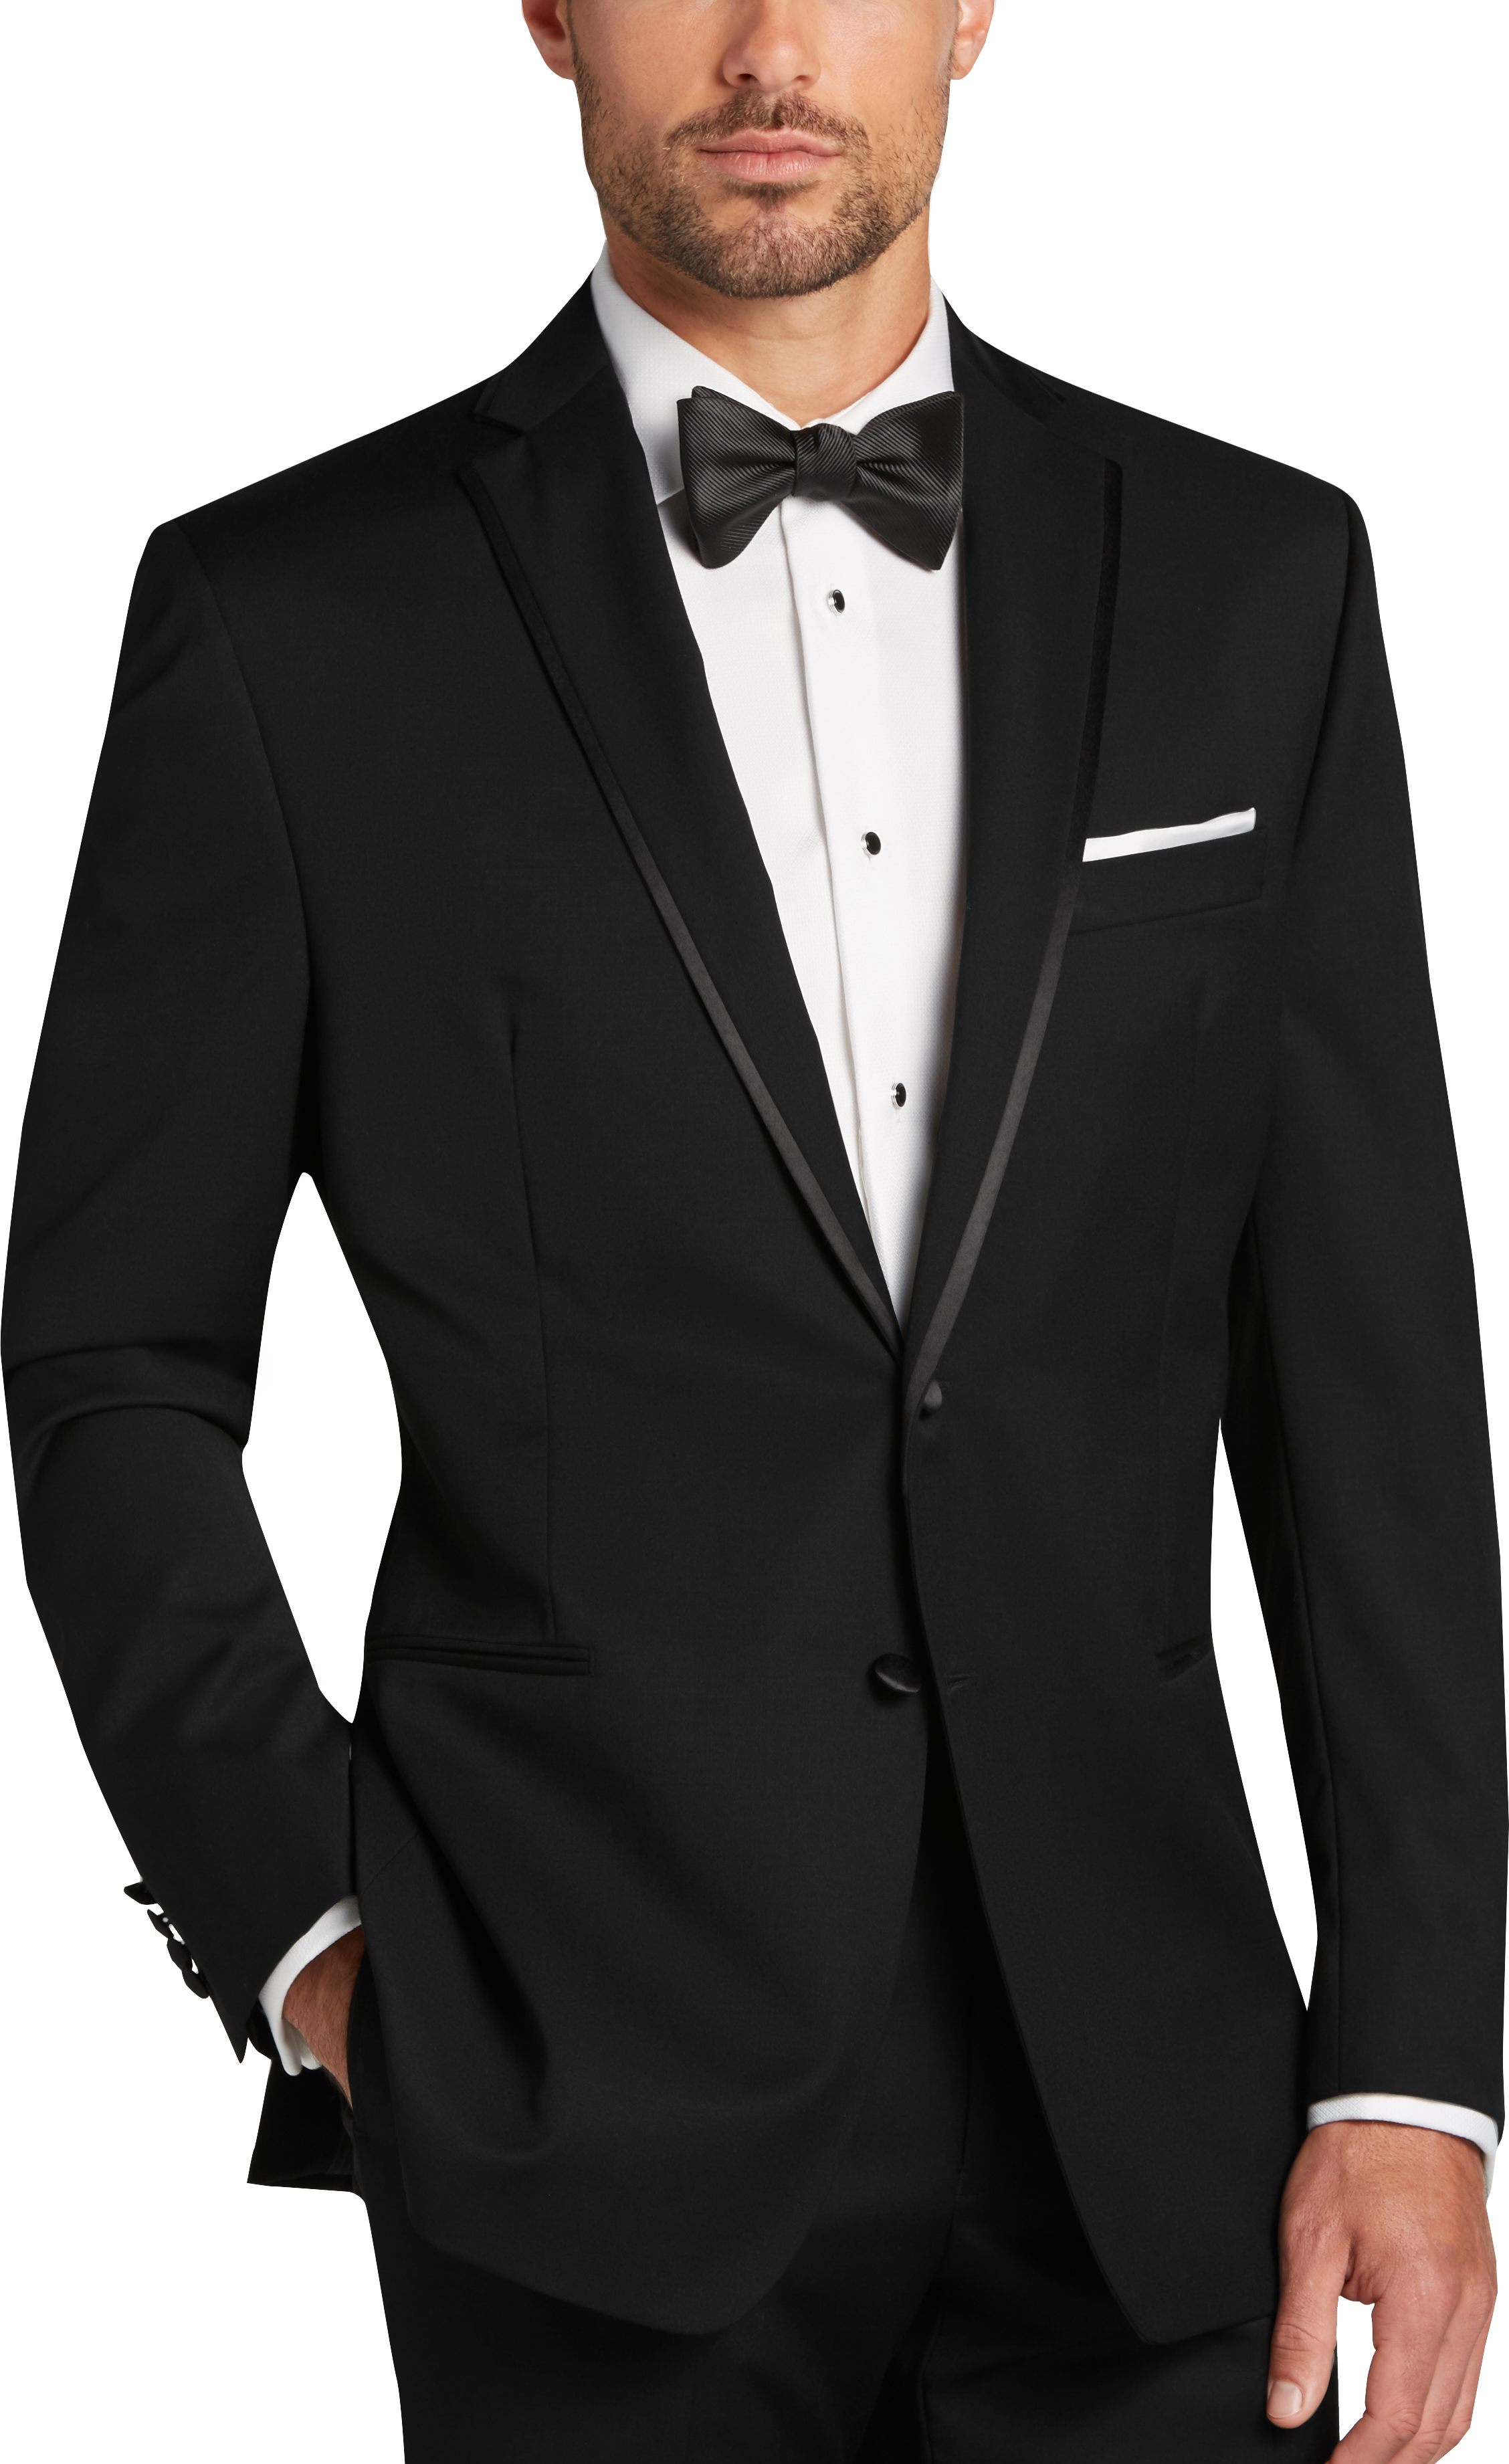 Men's Tuxedos, Black Tie Formal Wear & Attire | Men's Wearhouse